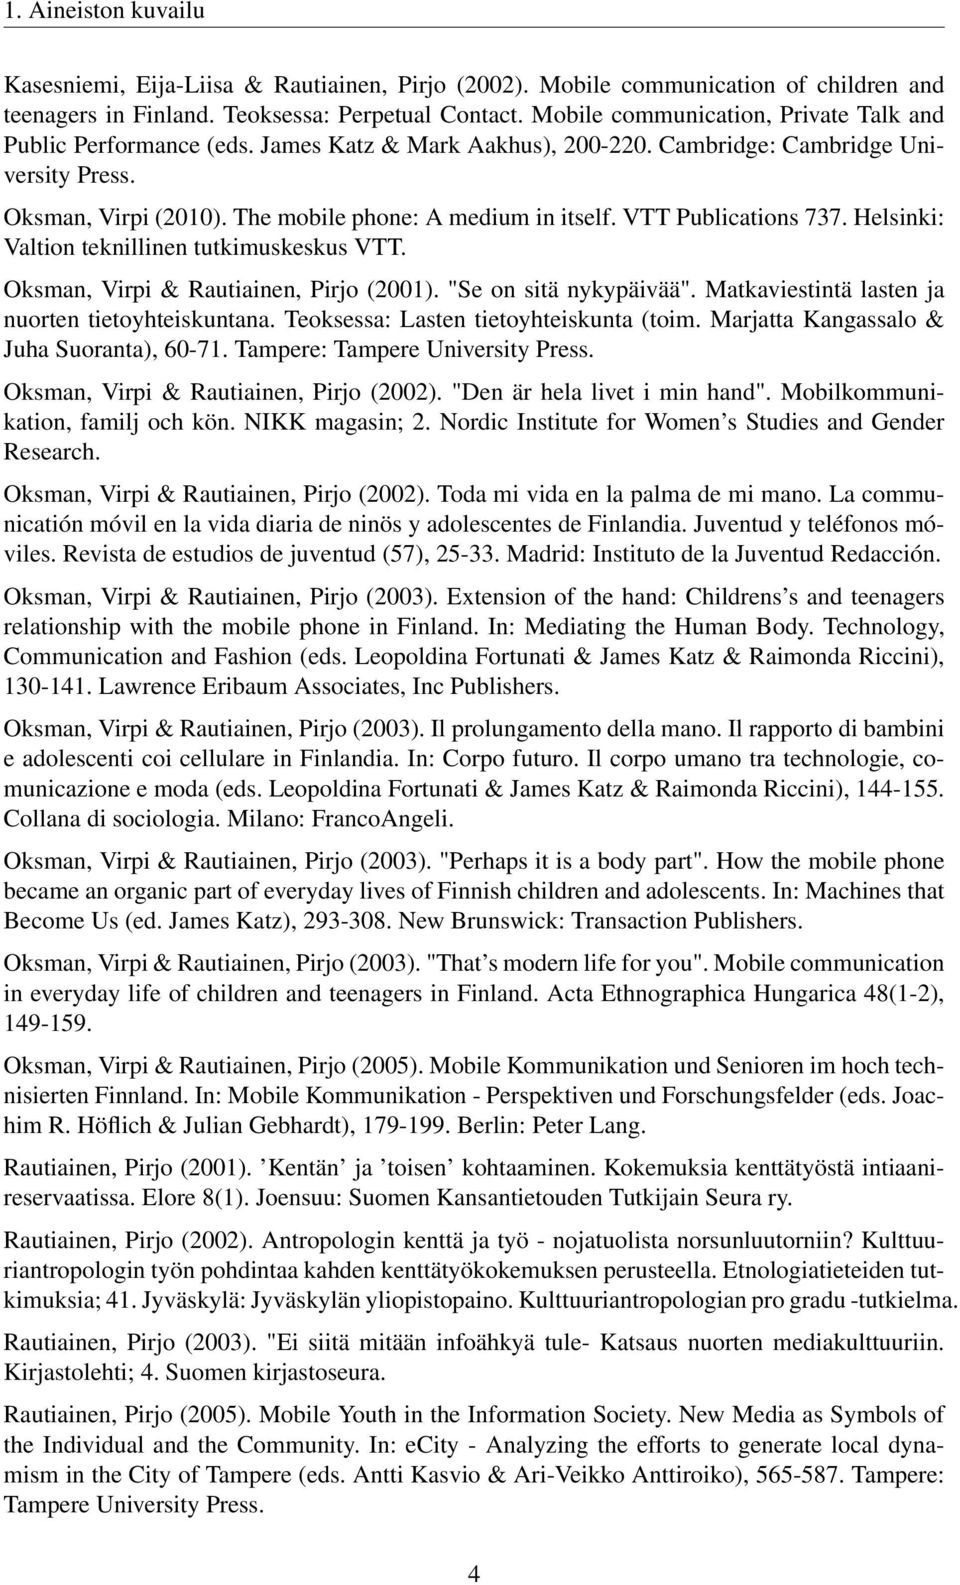 VTT Publications 737. Helsinki: Valtion teknillinen tutkimuskeskus VTT. Oksman, Virpi & Rautiainen, Pirjo (2001). "Se on sitä nykypäivää". Matkaviestintä lasten ja nuorten tietoyhteiskuntana.